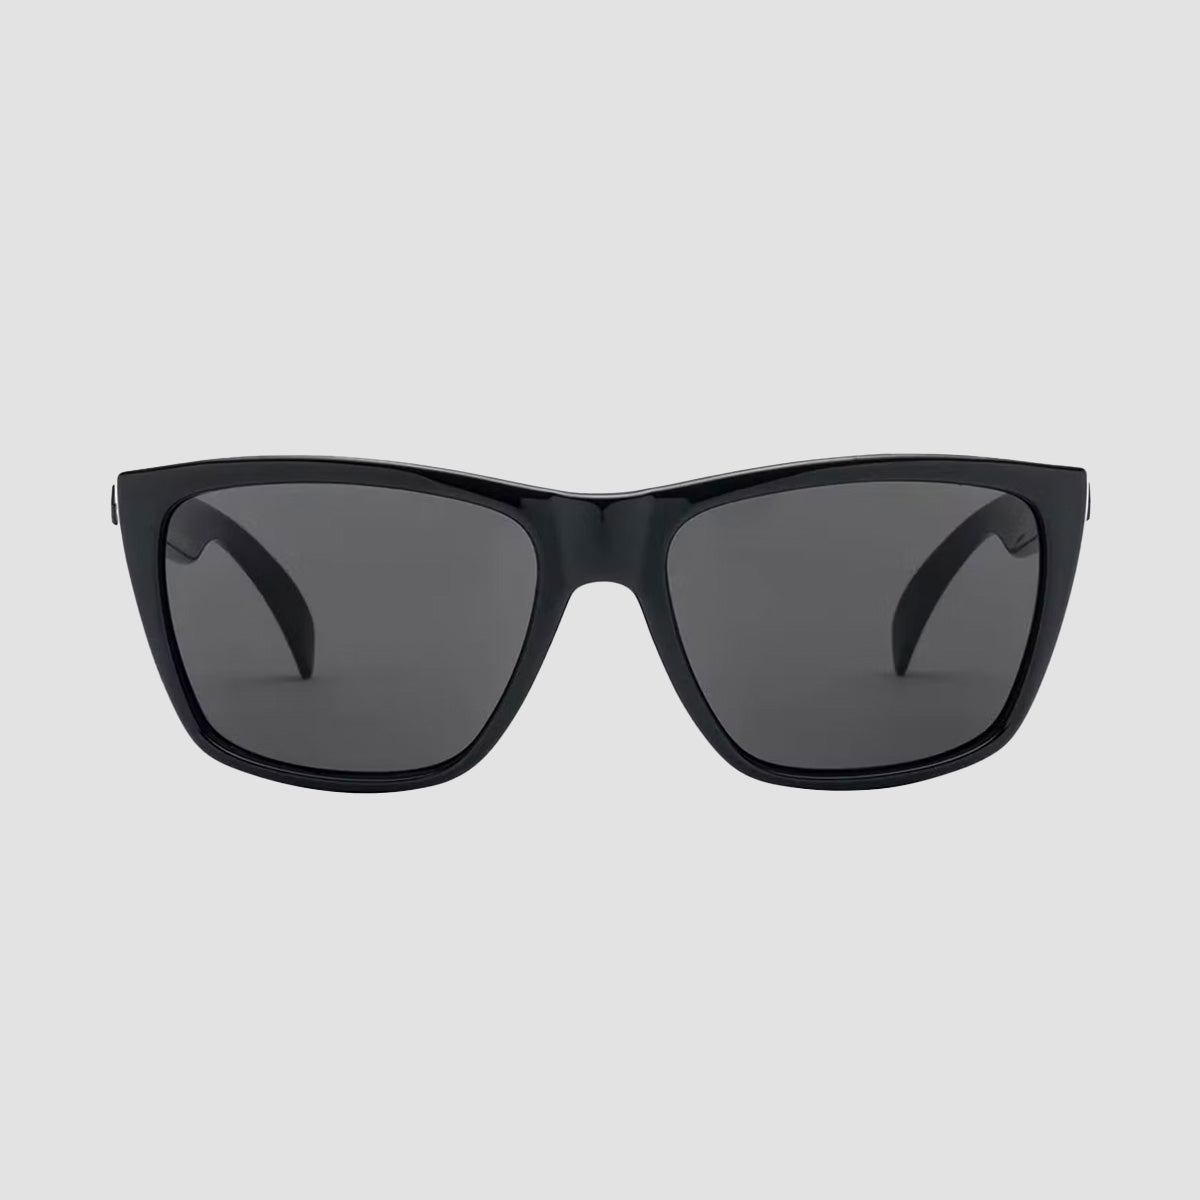 Volcom Palm Sunglasses Black/Grey